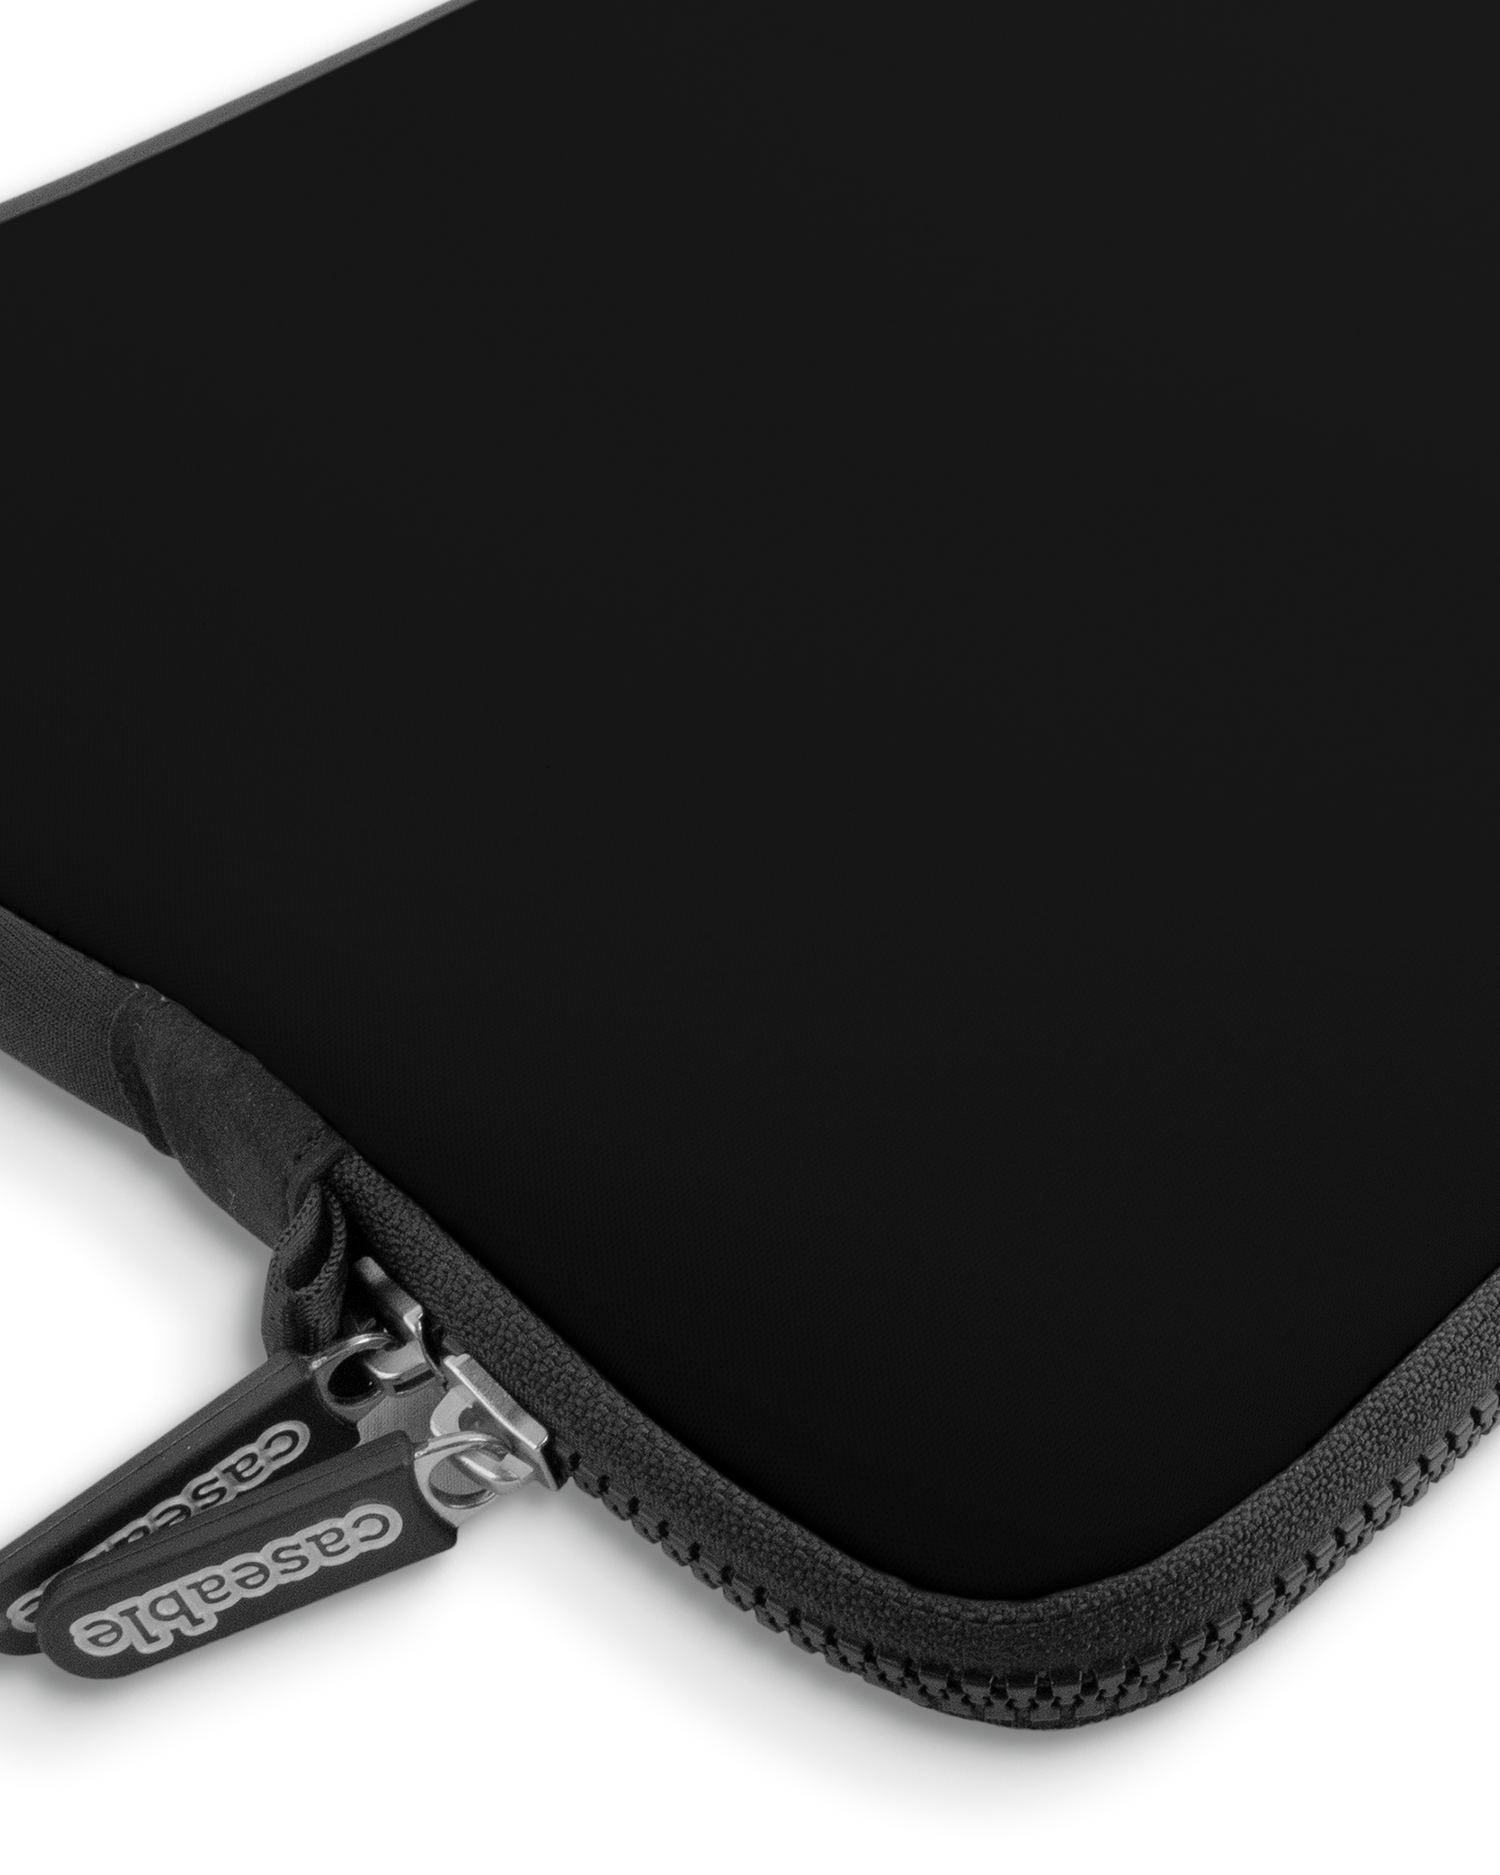 BLACK Premium Laptoptasche 13-14 Zoll mit Gerät im Inneren